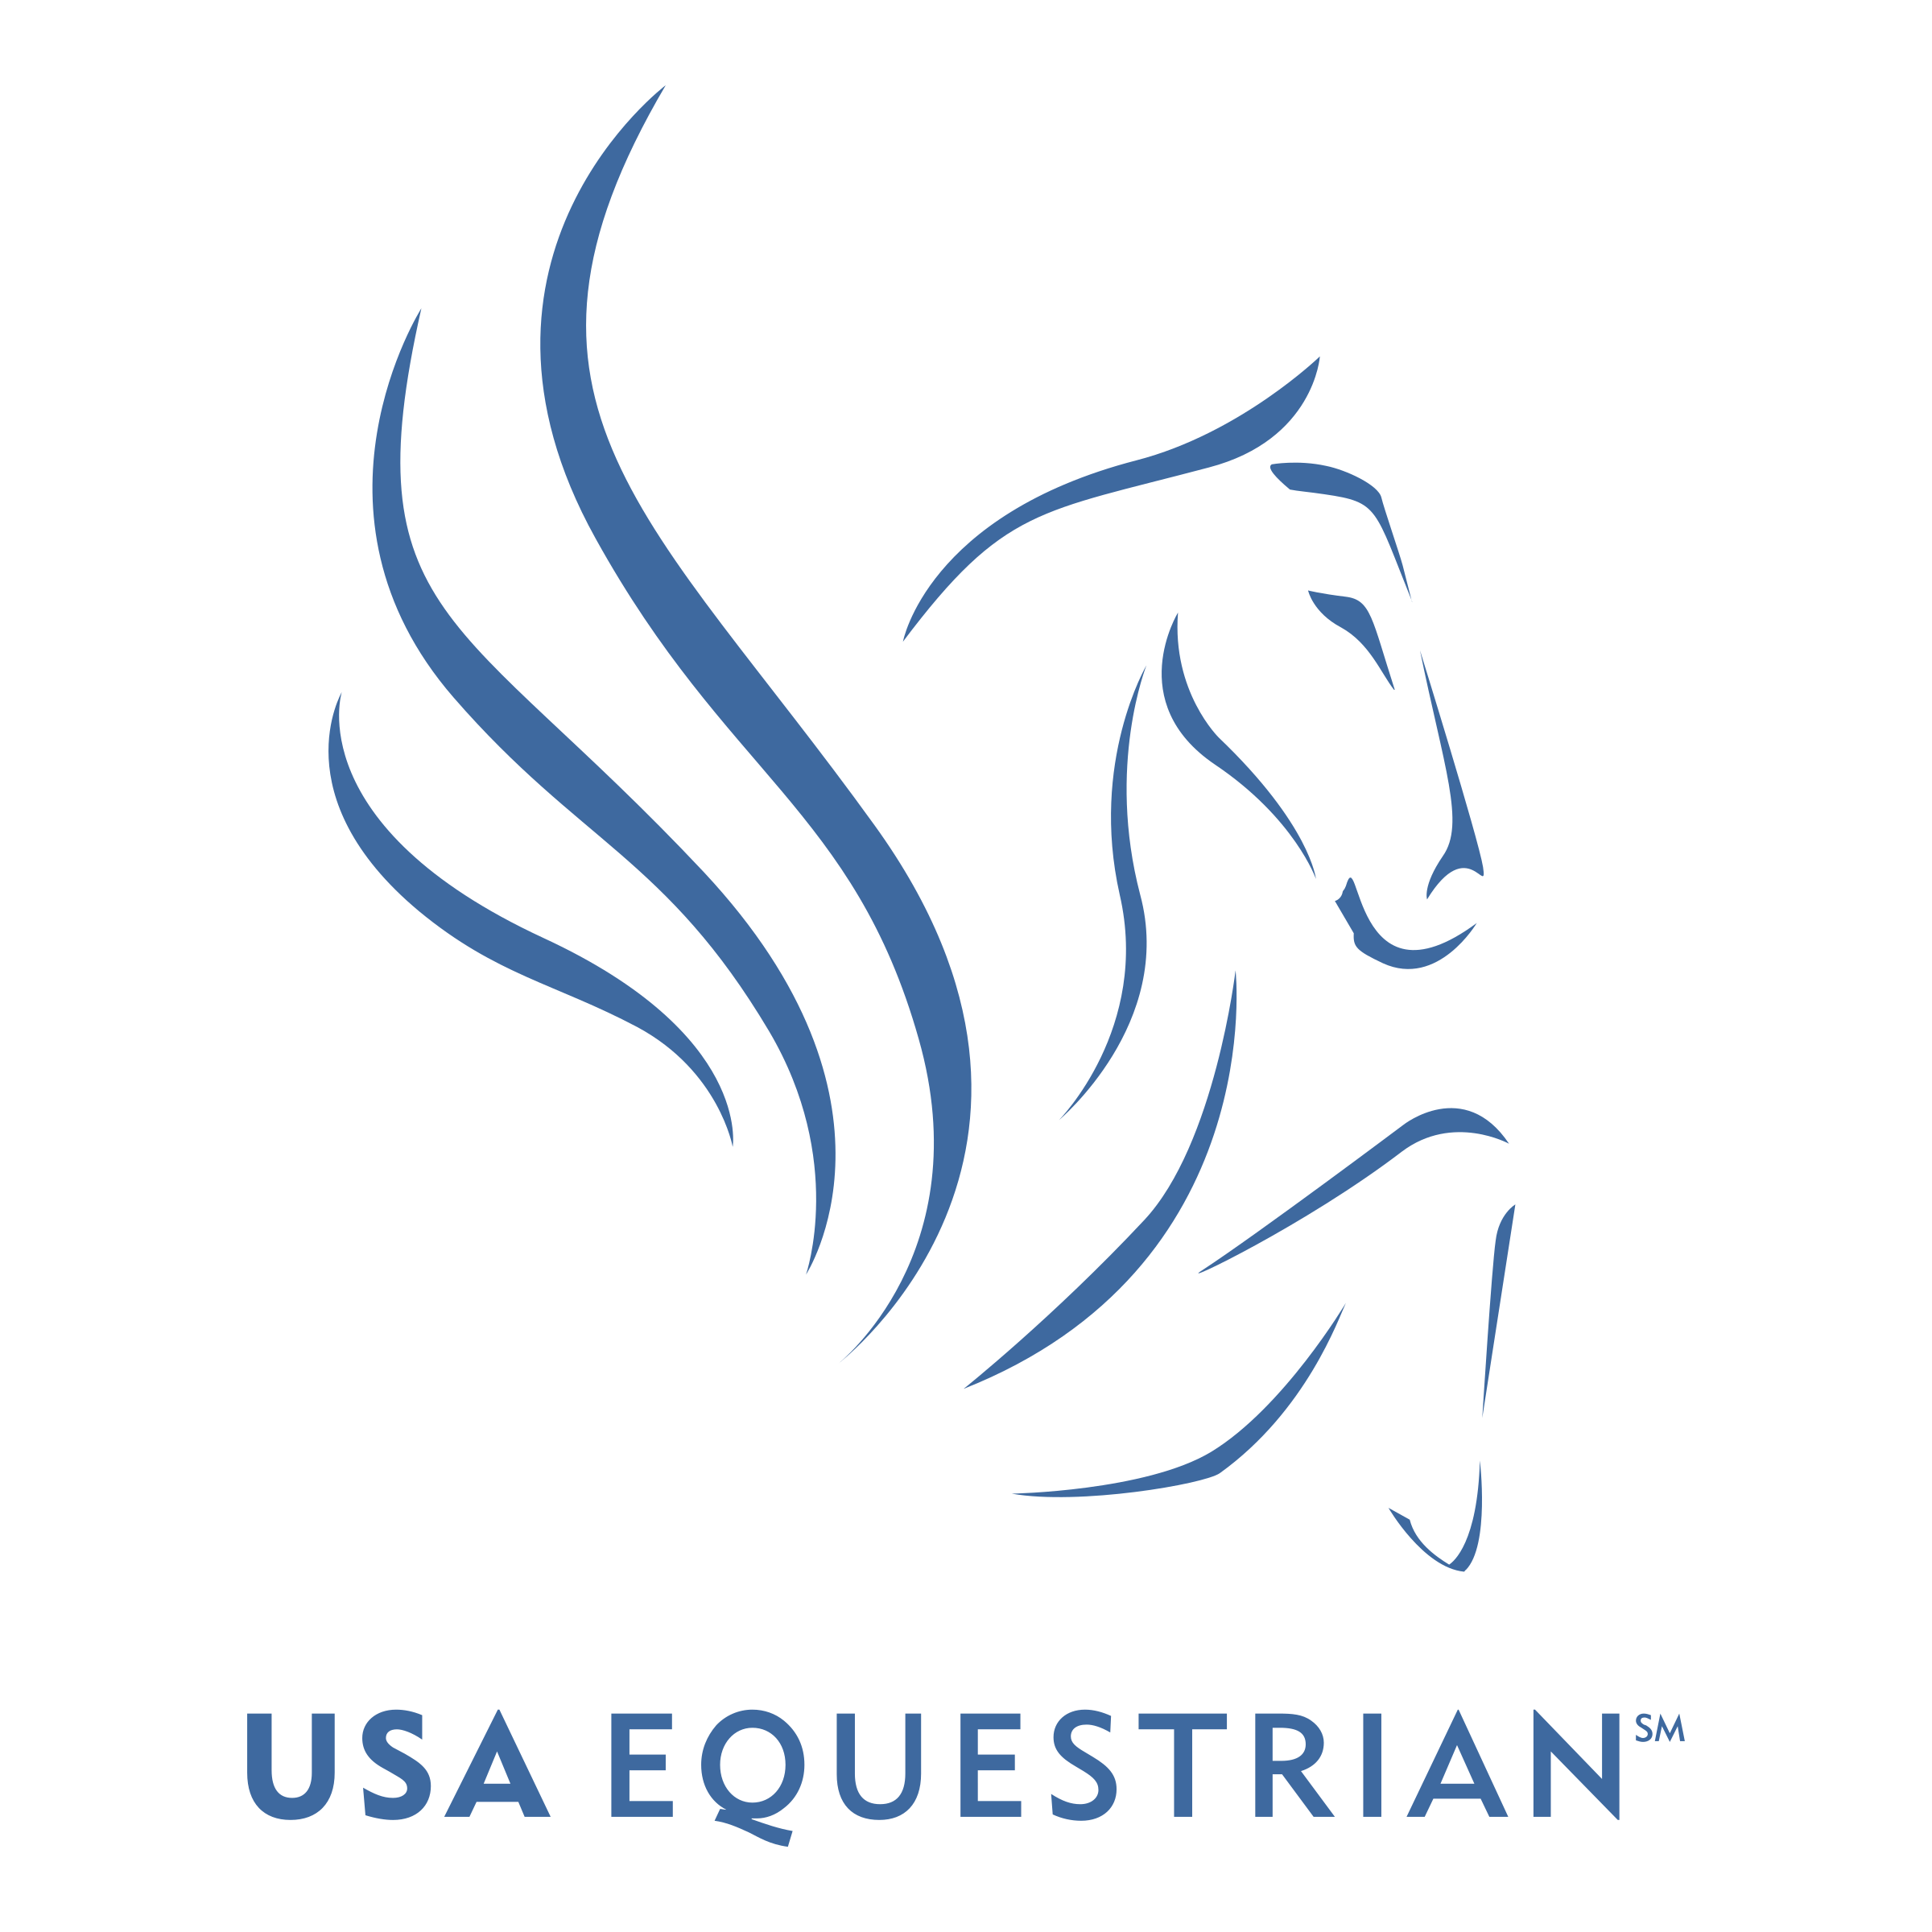 Equestrian Logo - USA Equestrian Logo PNG Transparent & SVG Vector